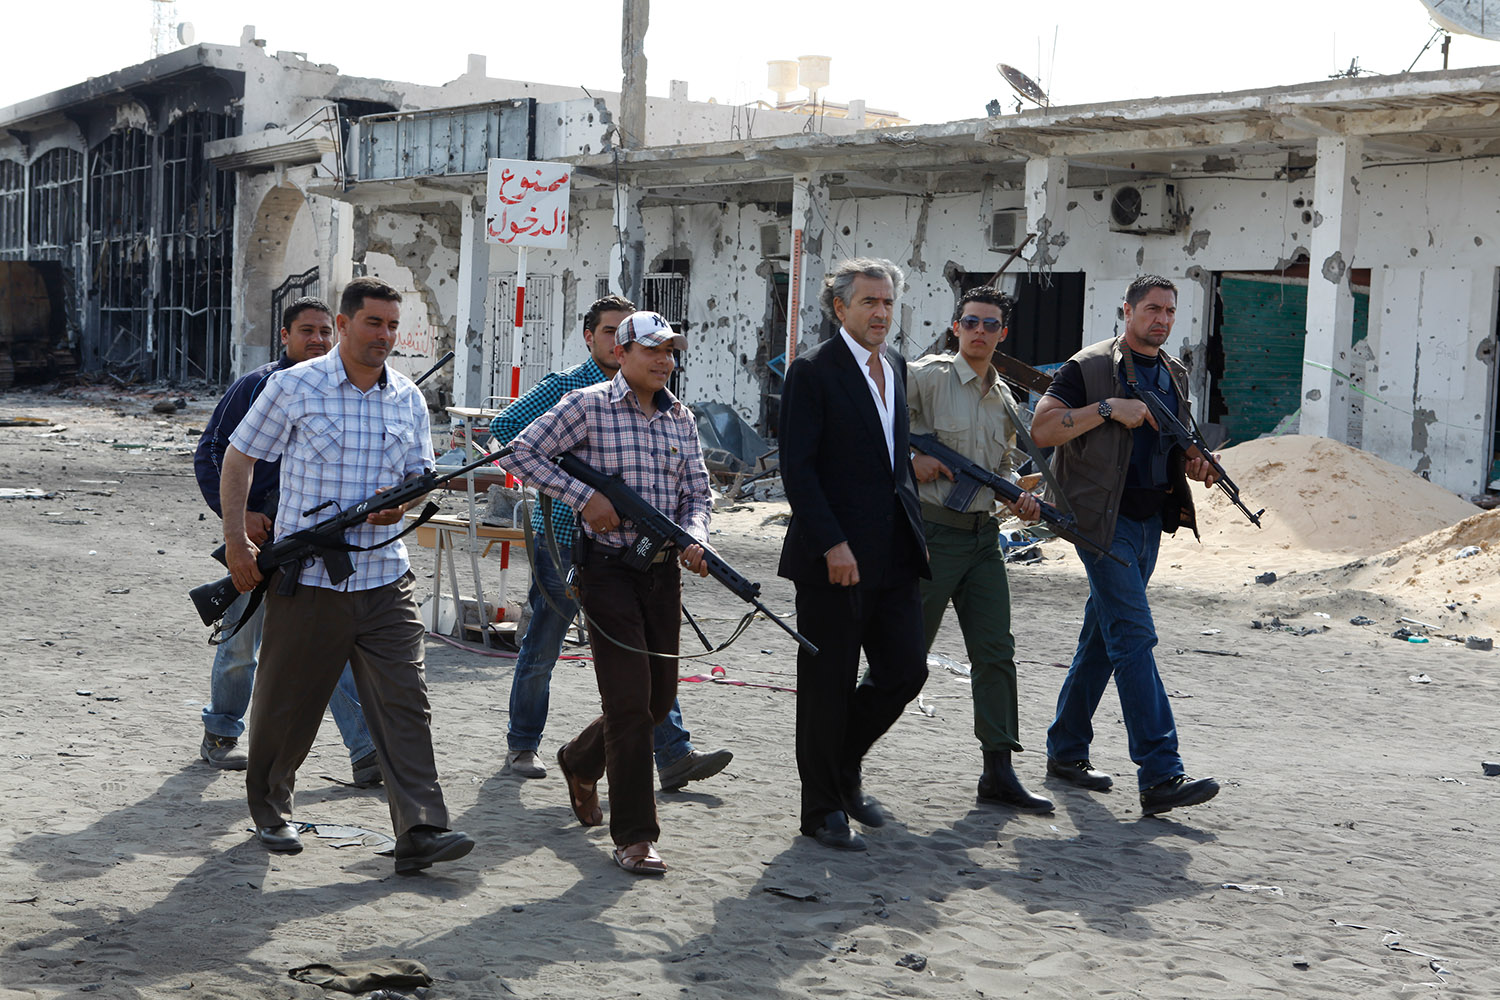 Bernard-Henri Lévy escorté par des hommes armés dans les rues de Misrata déserte en Libye.